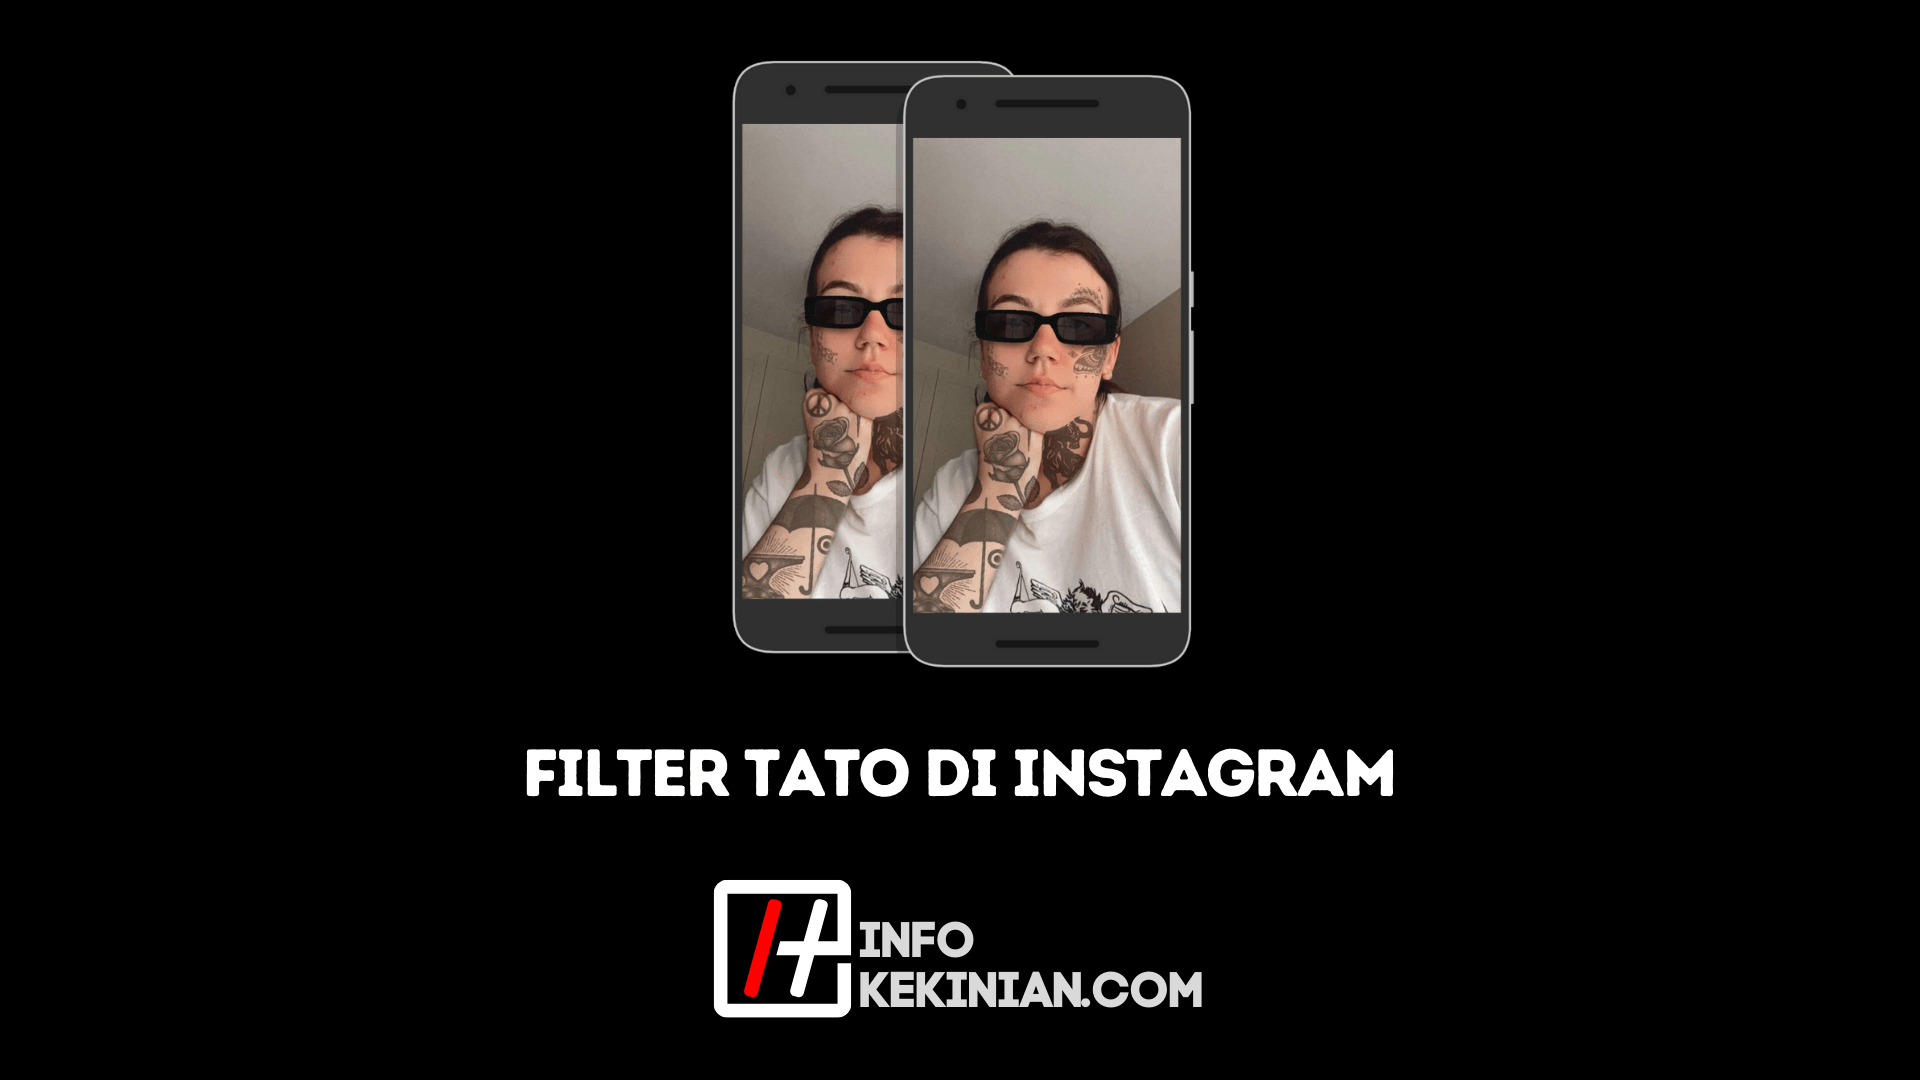 Name des Tattoo-Filters auf Instagram